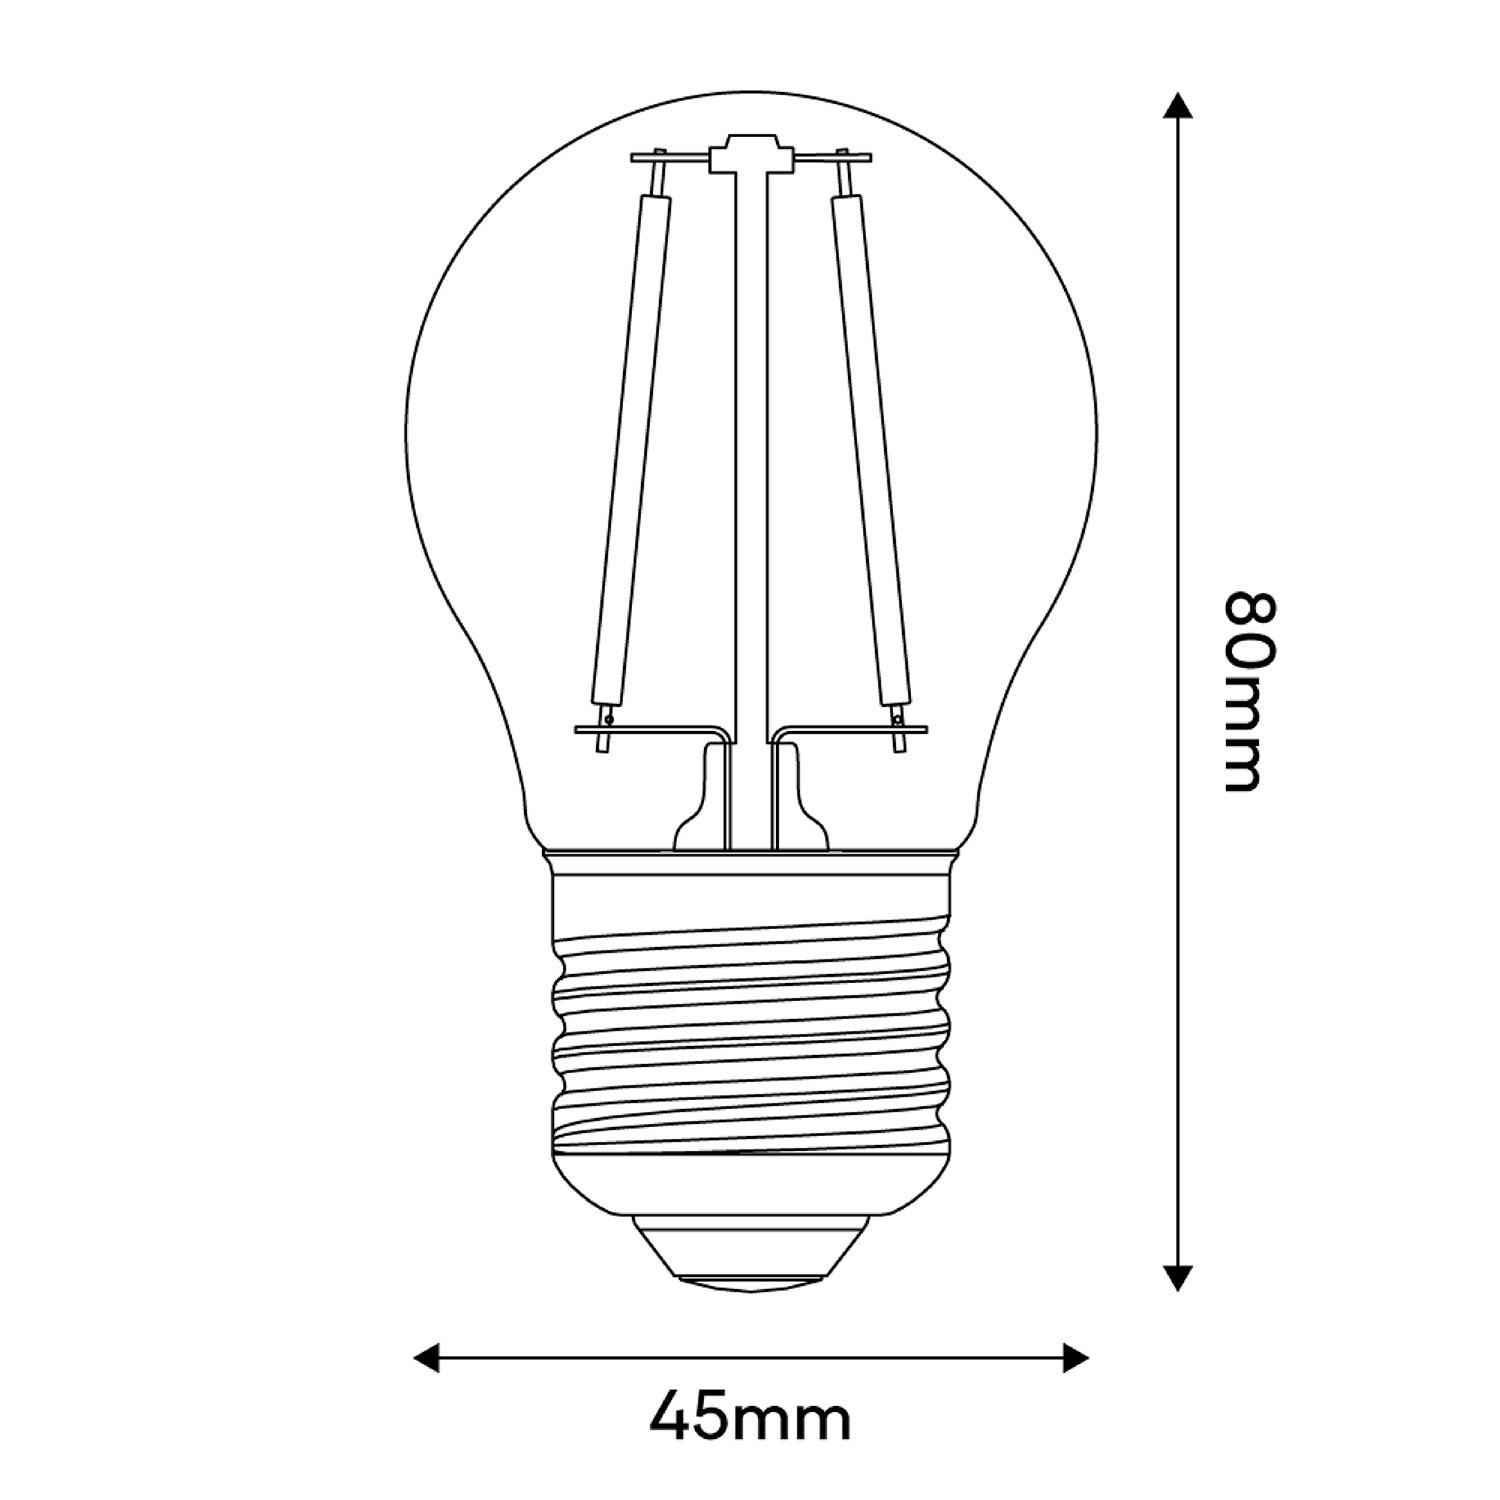 Bombilla LED Transparente Globetta G45 2W 136Lm E27 2700K - E08